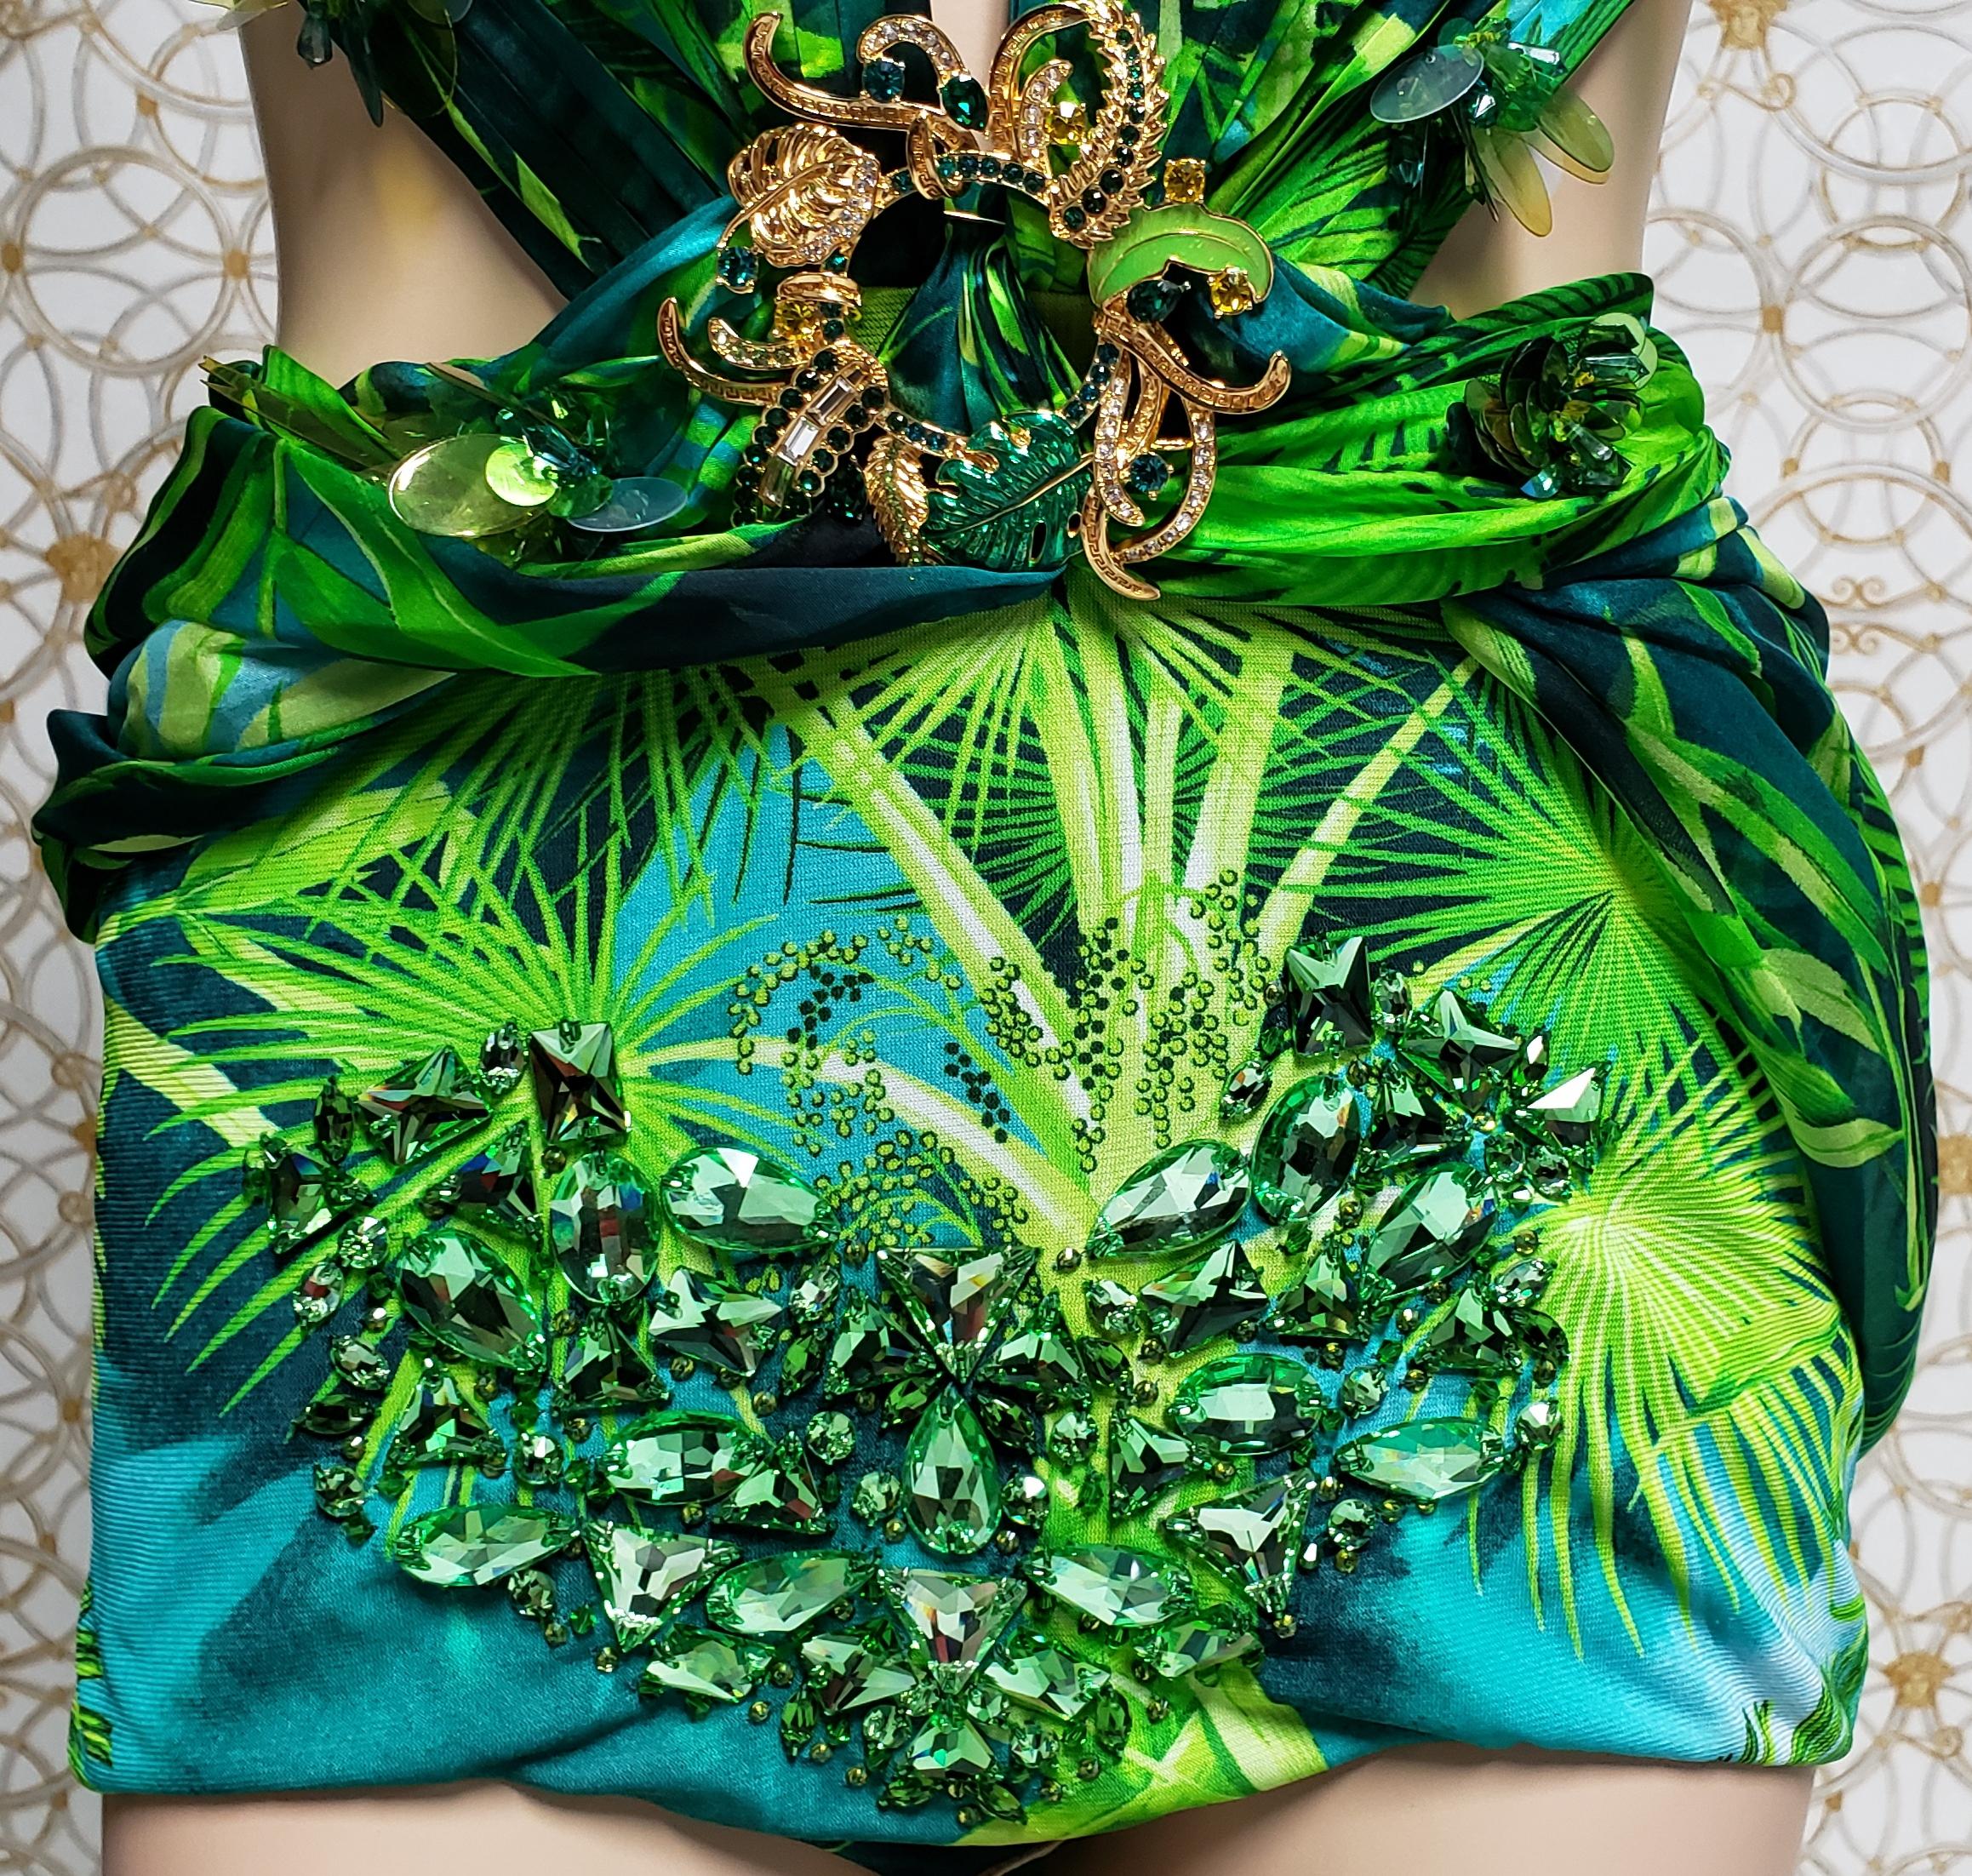 S/S 2020 Versace Embellished Jungle print Finalee Dress as seen on Jen Lopez 2